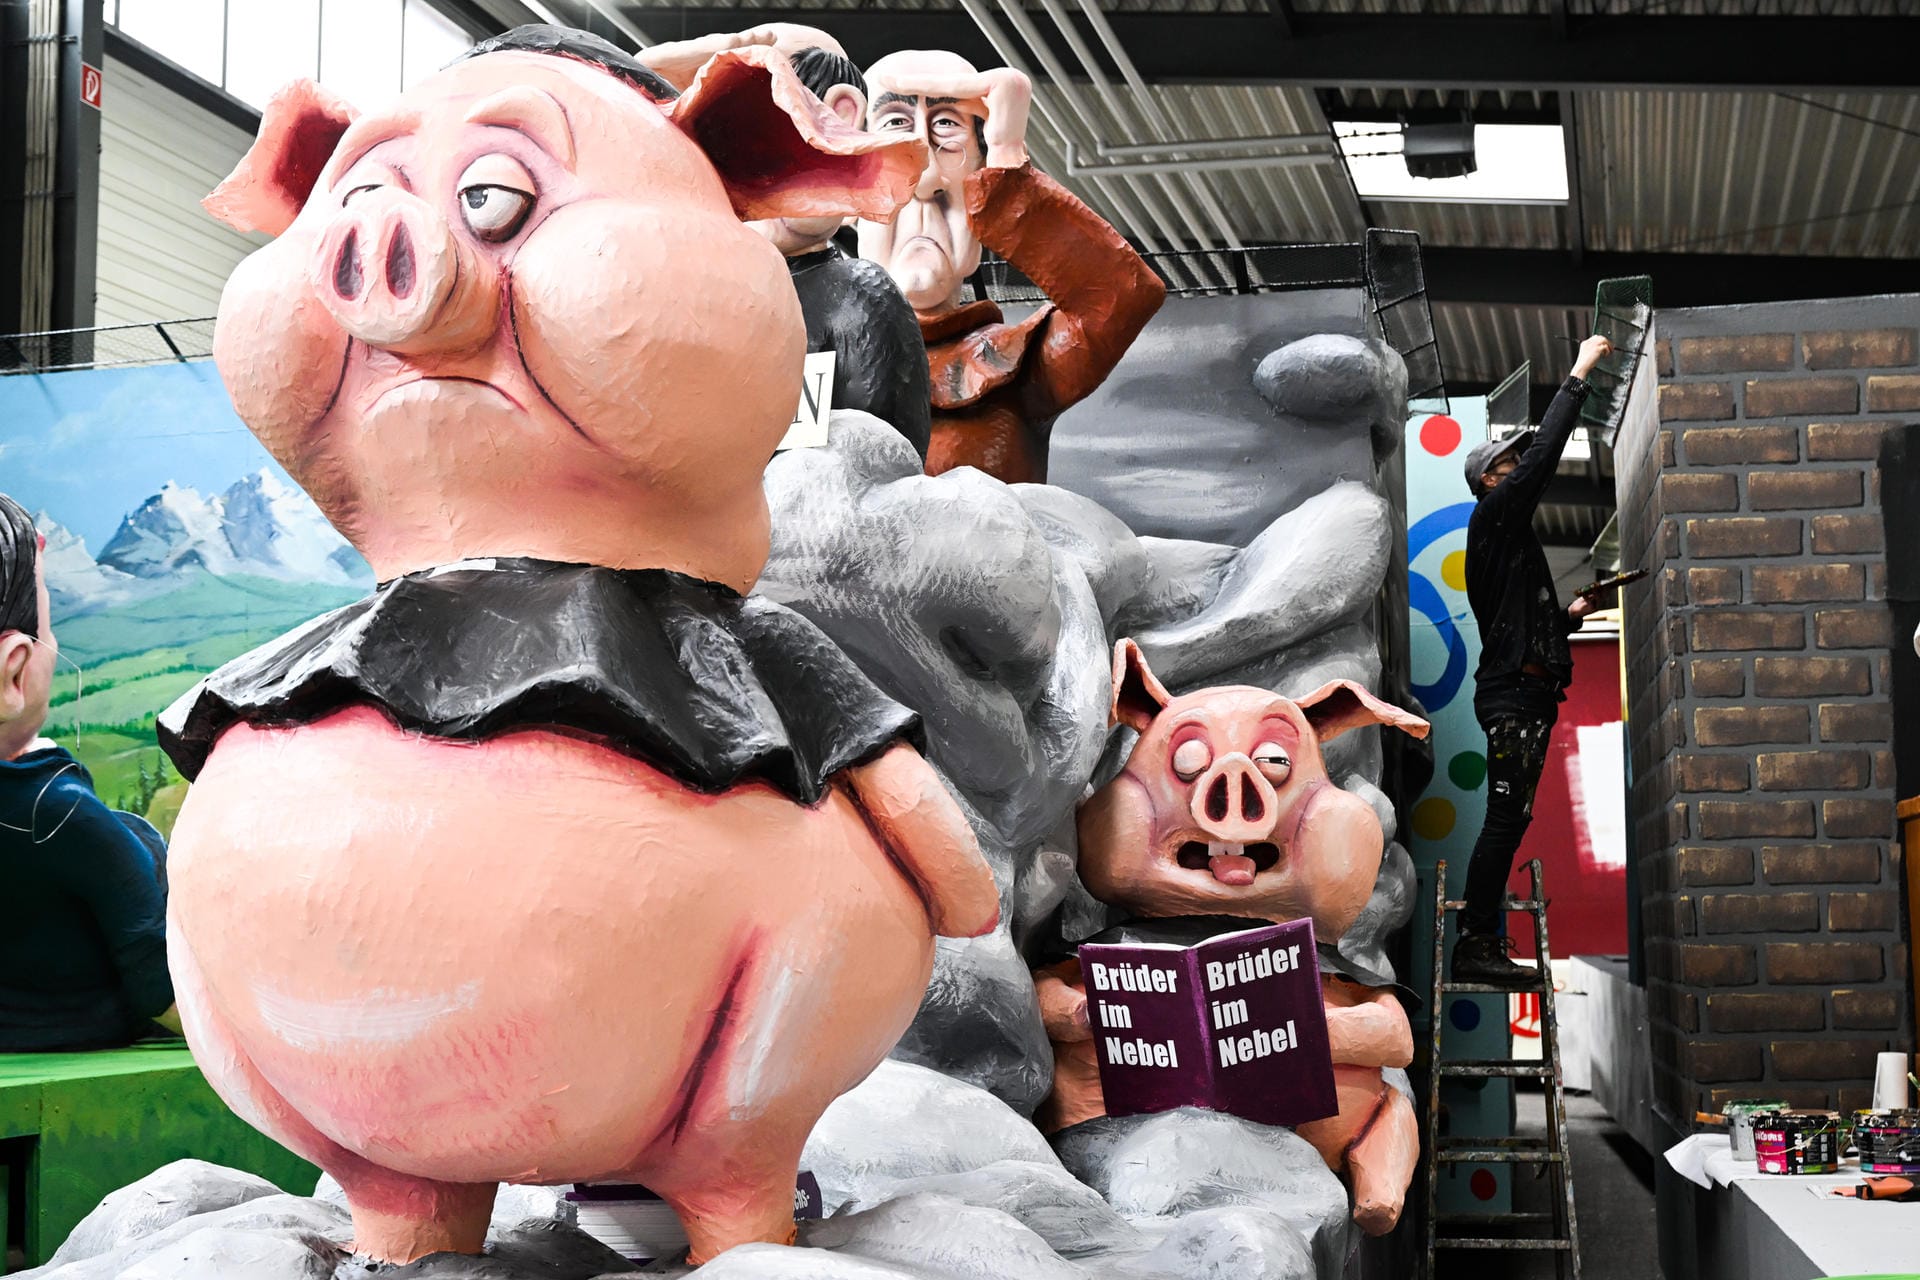 Auch die Aufklärung des Missbrauchsskandals im Kölner Erzbistum ist Thema im Karneval: "Schweinepriester vor dem Herrn" lautet der wenig schmeichelhafte Titel dieses Motivwagens.